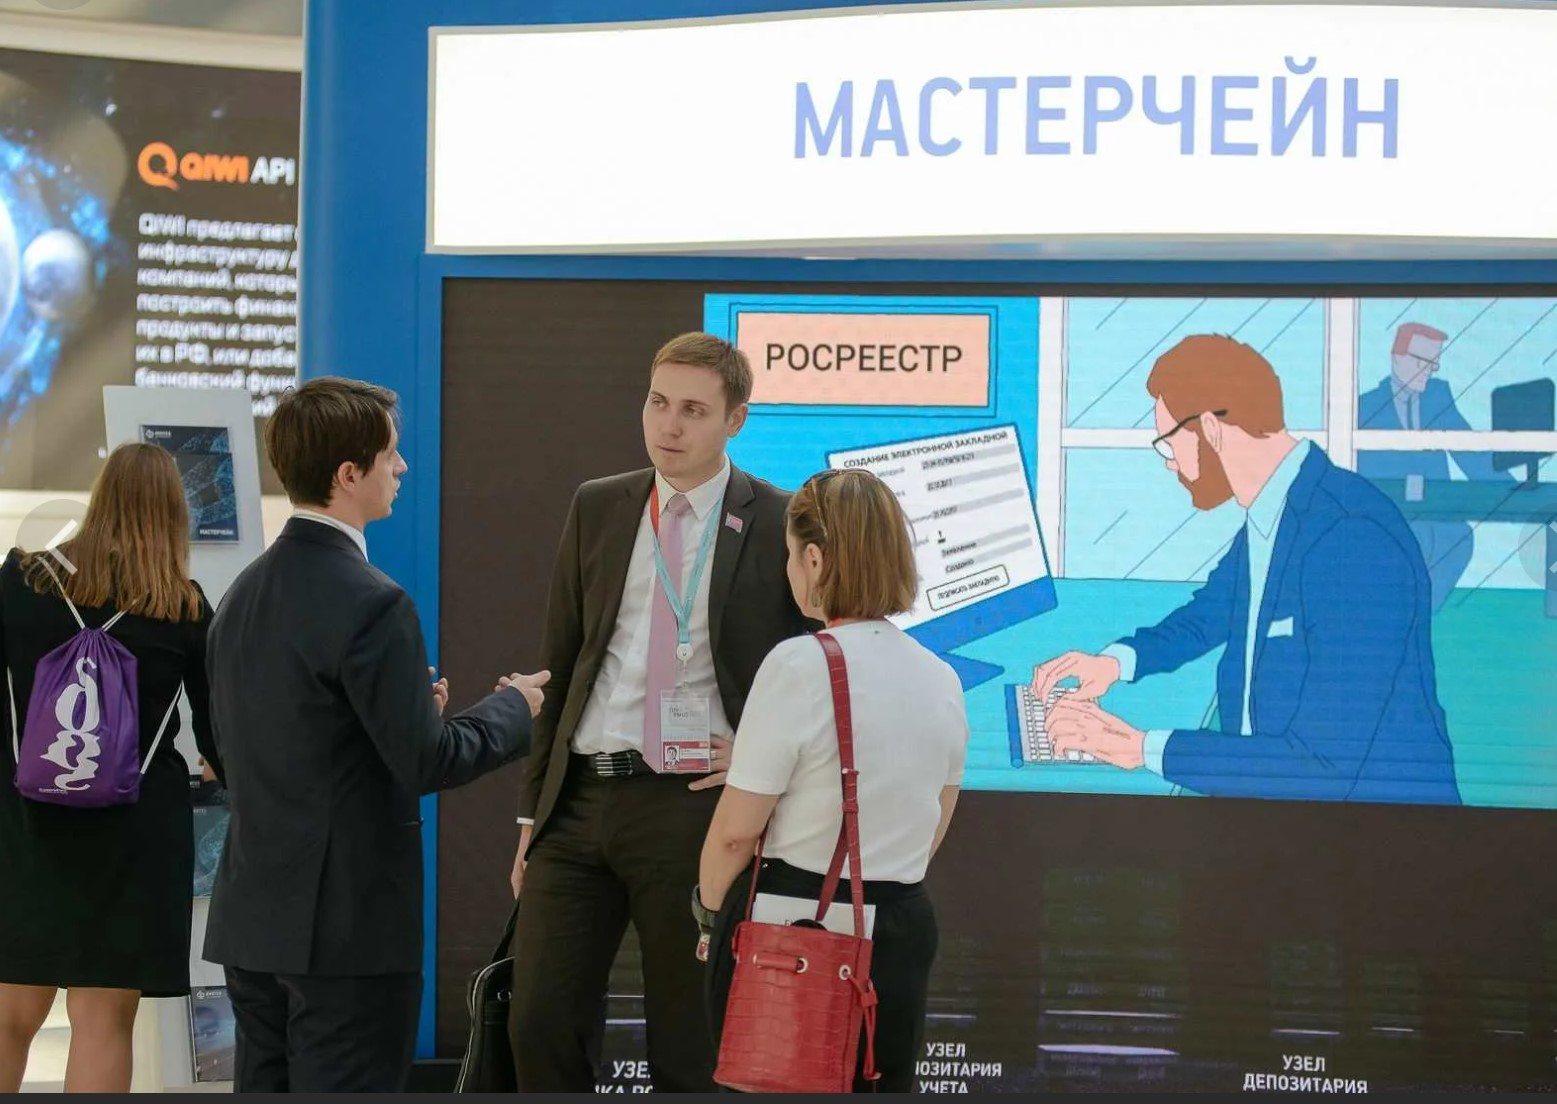 Мастерчейн - решение поддерживает ГОСТ-криптографию , сертифицировано ФСБ России